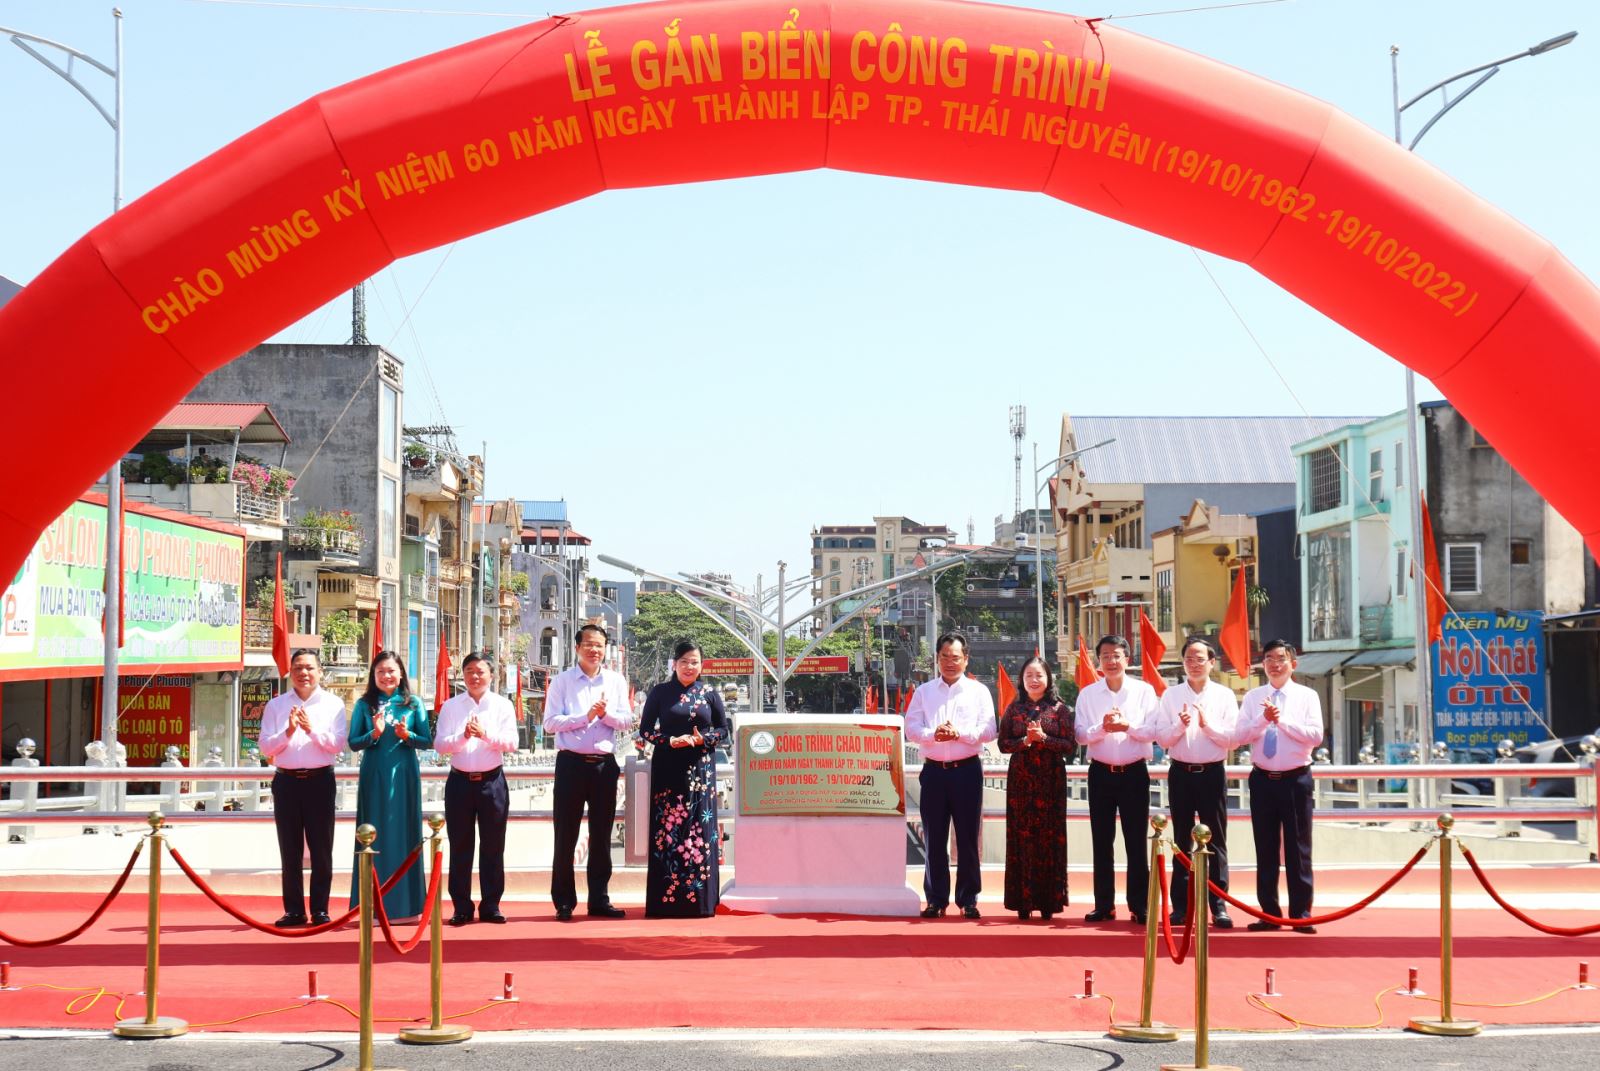  Các đại biểu gắn biển chào mừng đối với công trình nút giao khác cốt đường Thống Nhất và đường Việt Bắc.